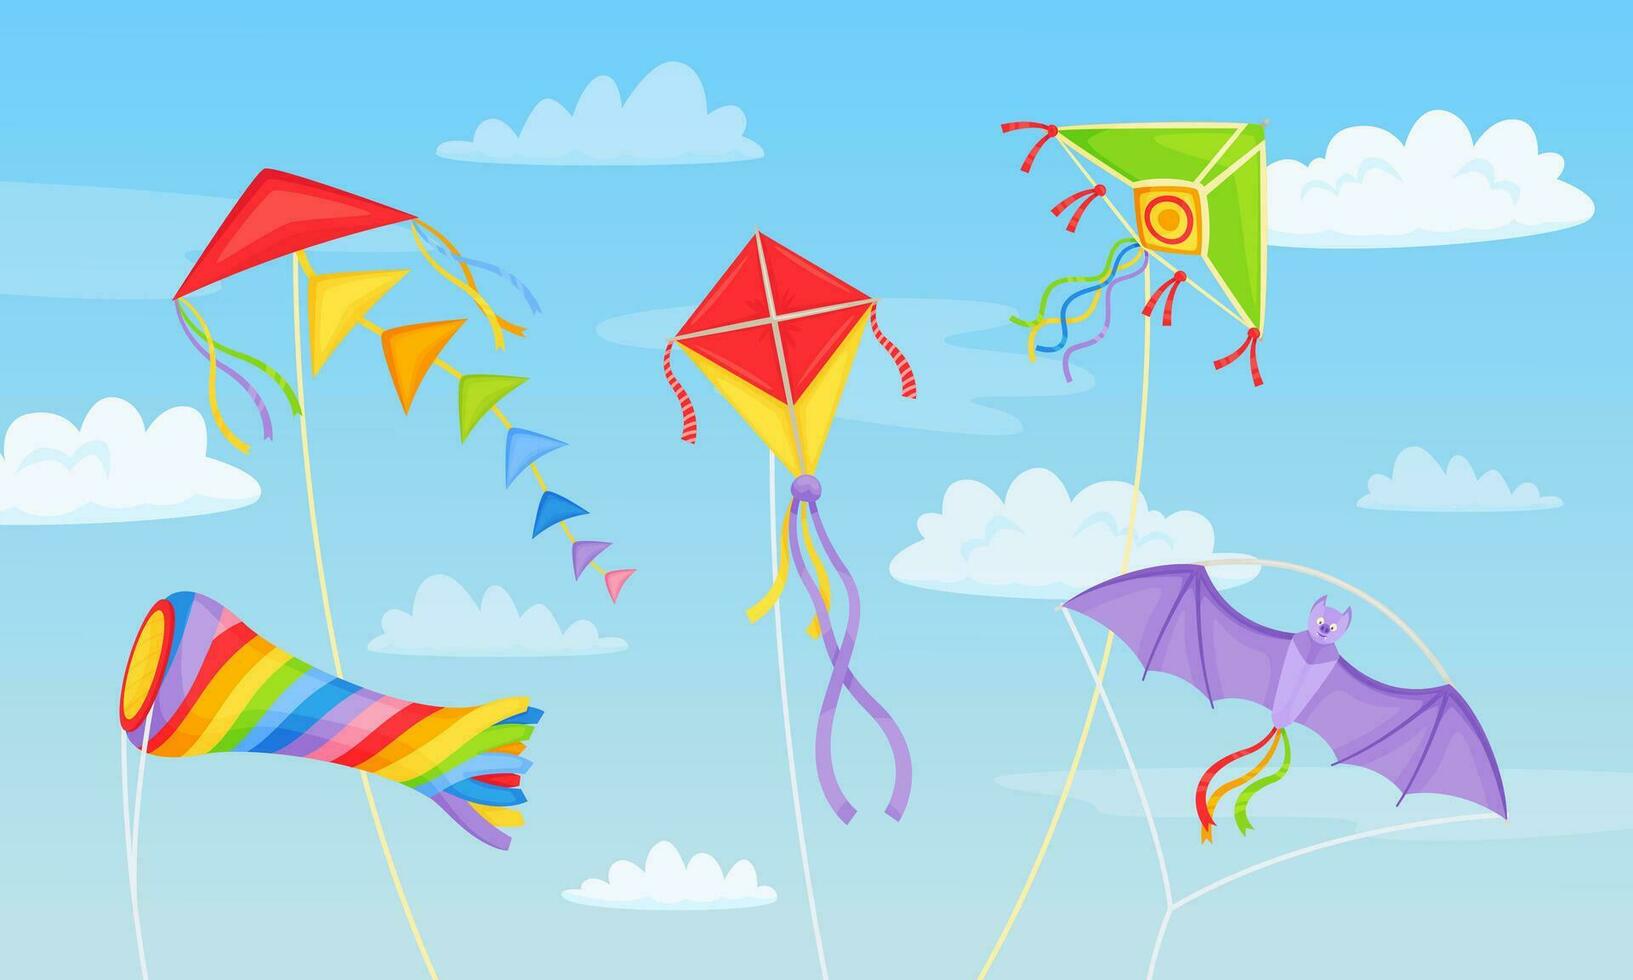 Karikatur bunt Drachen im Himmel mit Wolken, Drachen Festival Hintergrund. Blau Himmel mit fliegend Luft Spielzeuge, Sommer- Kinder Aktivität Vektor Illustration